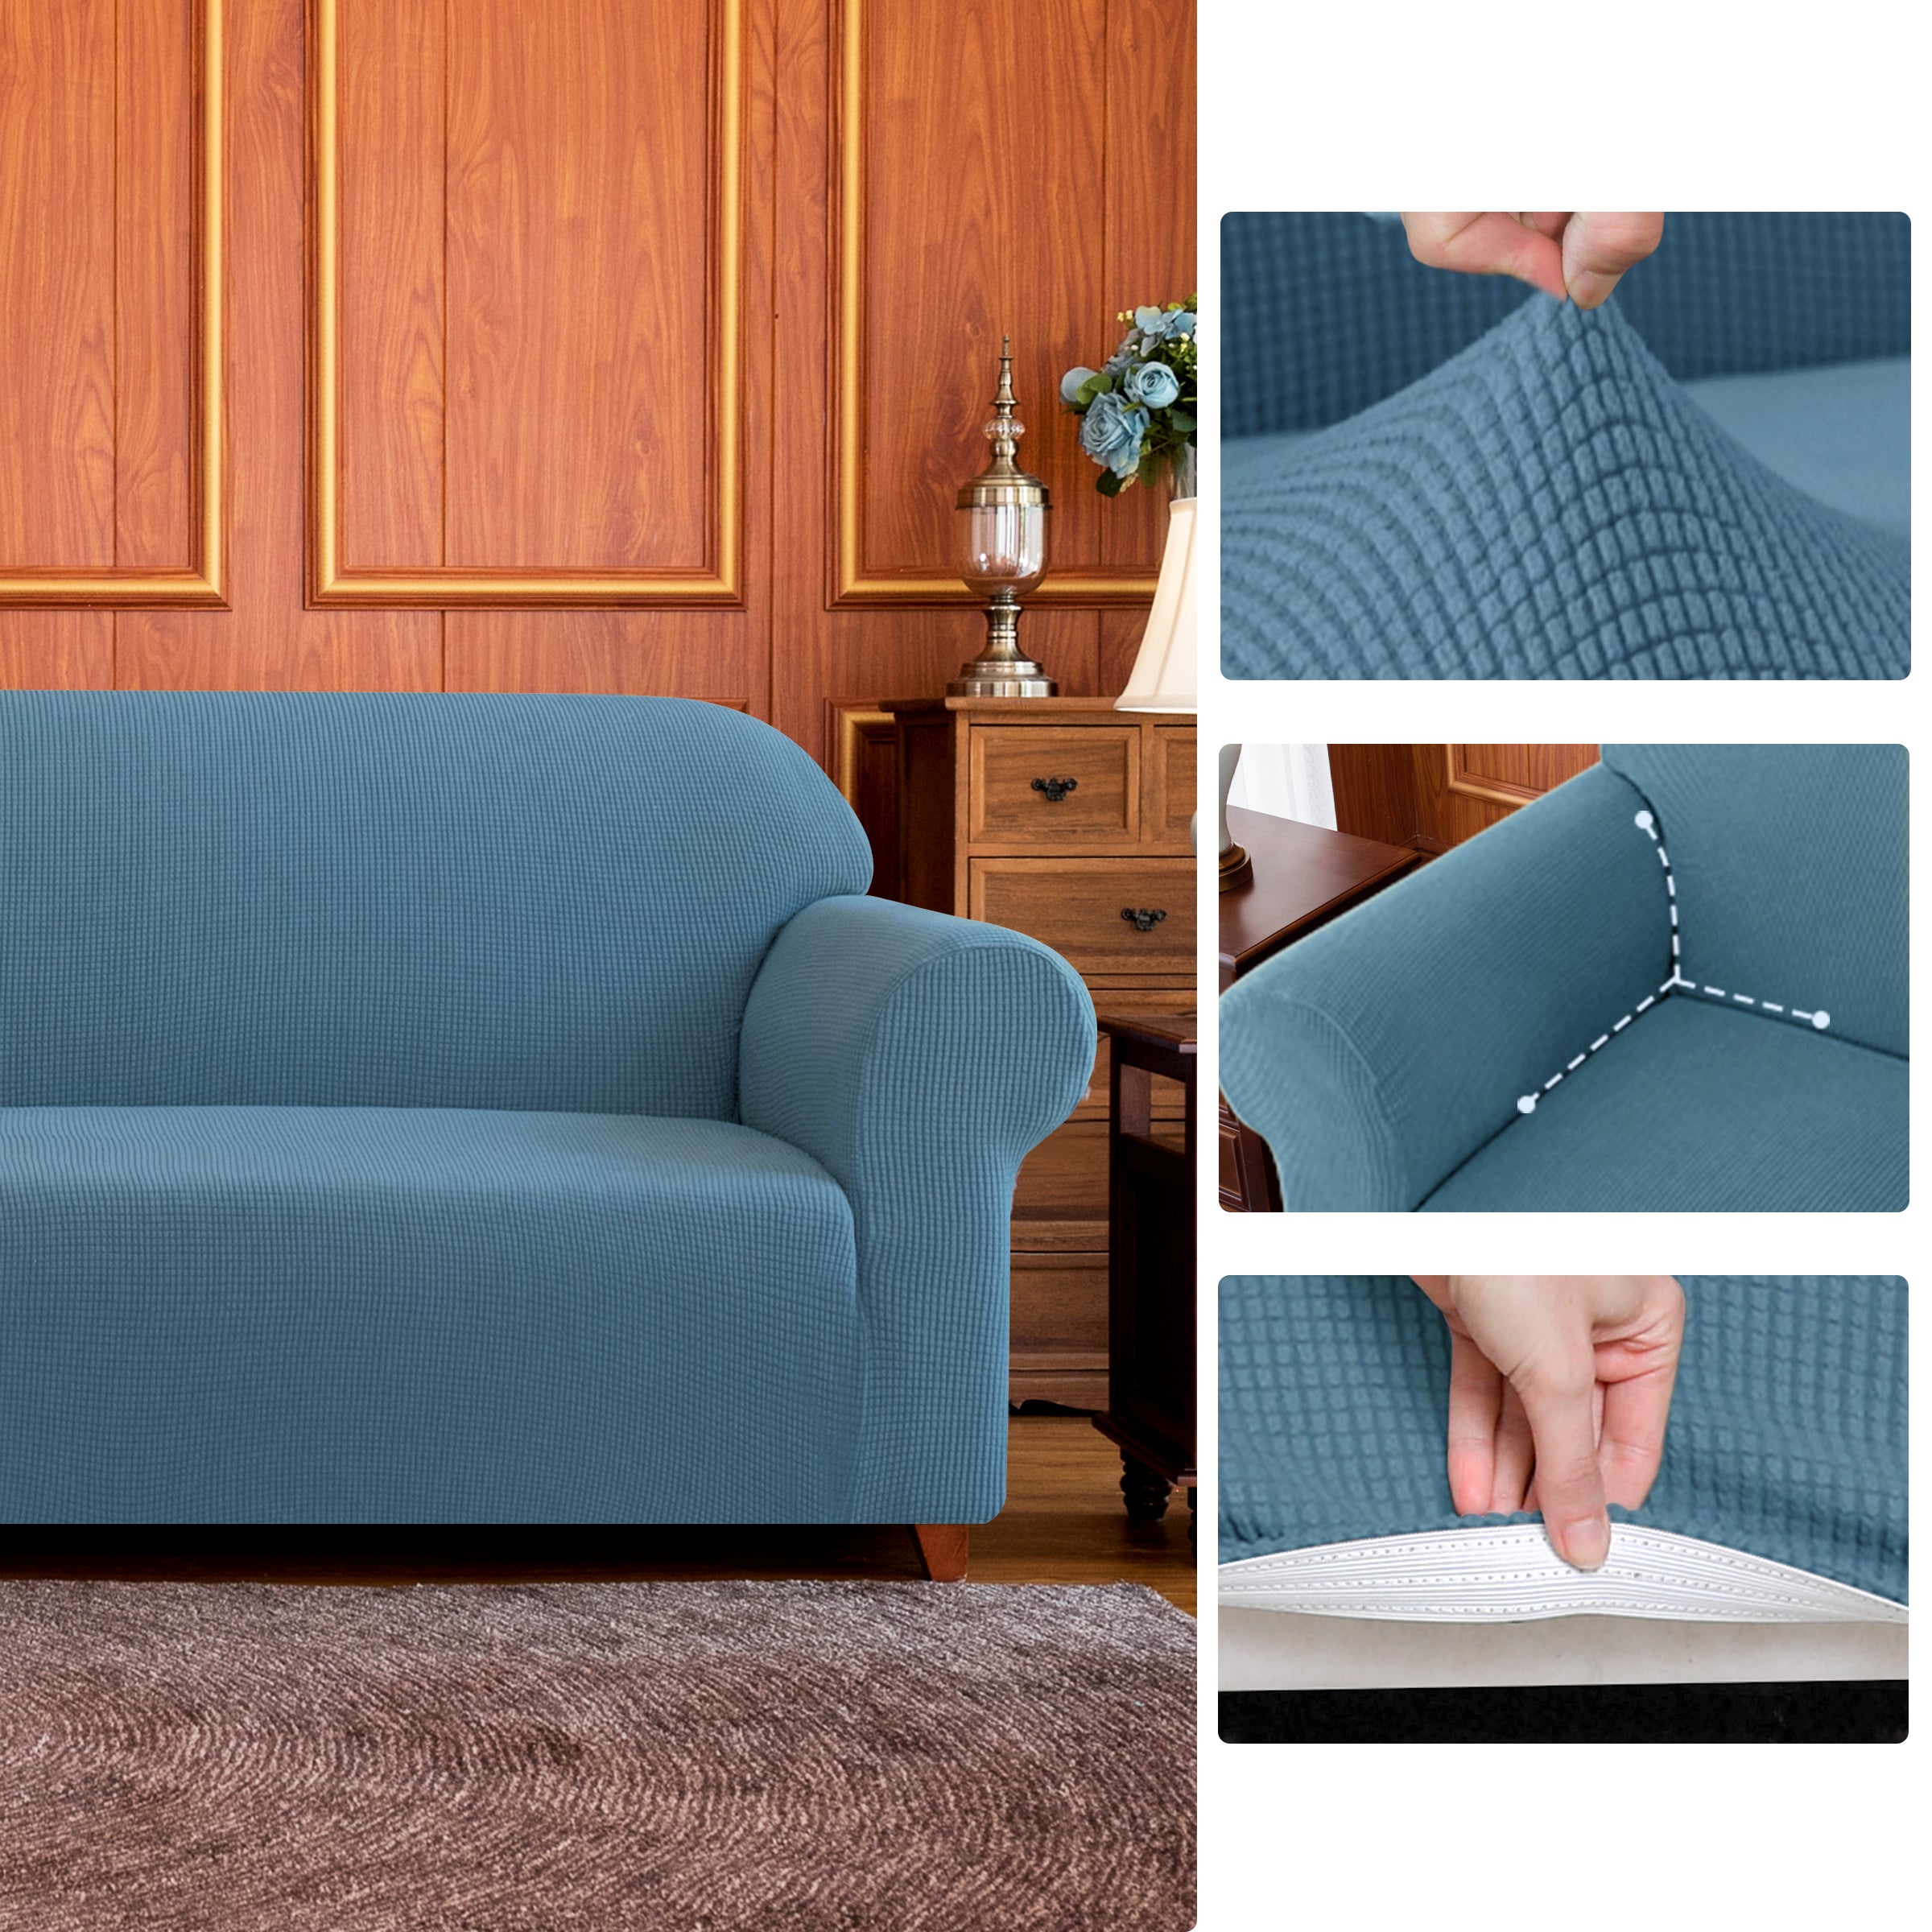 Leroy Plaid Stretch Sofa Slipcover